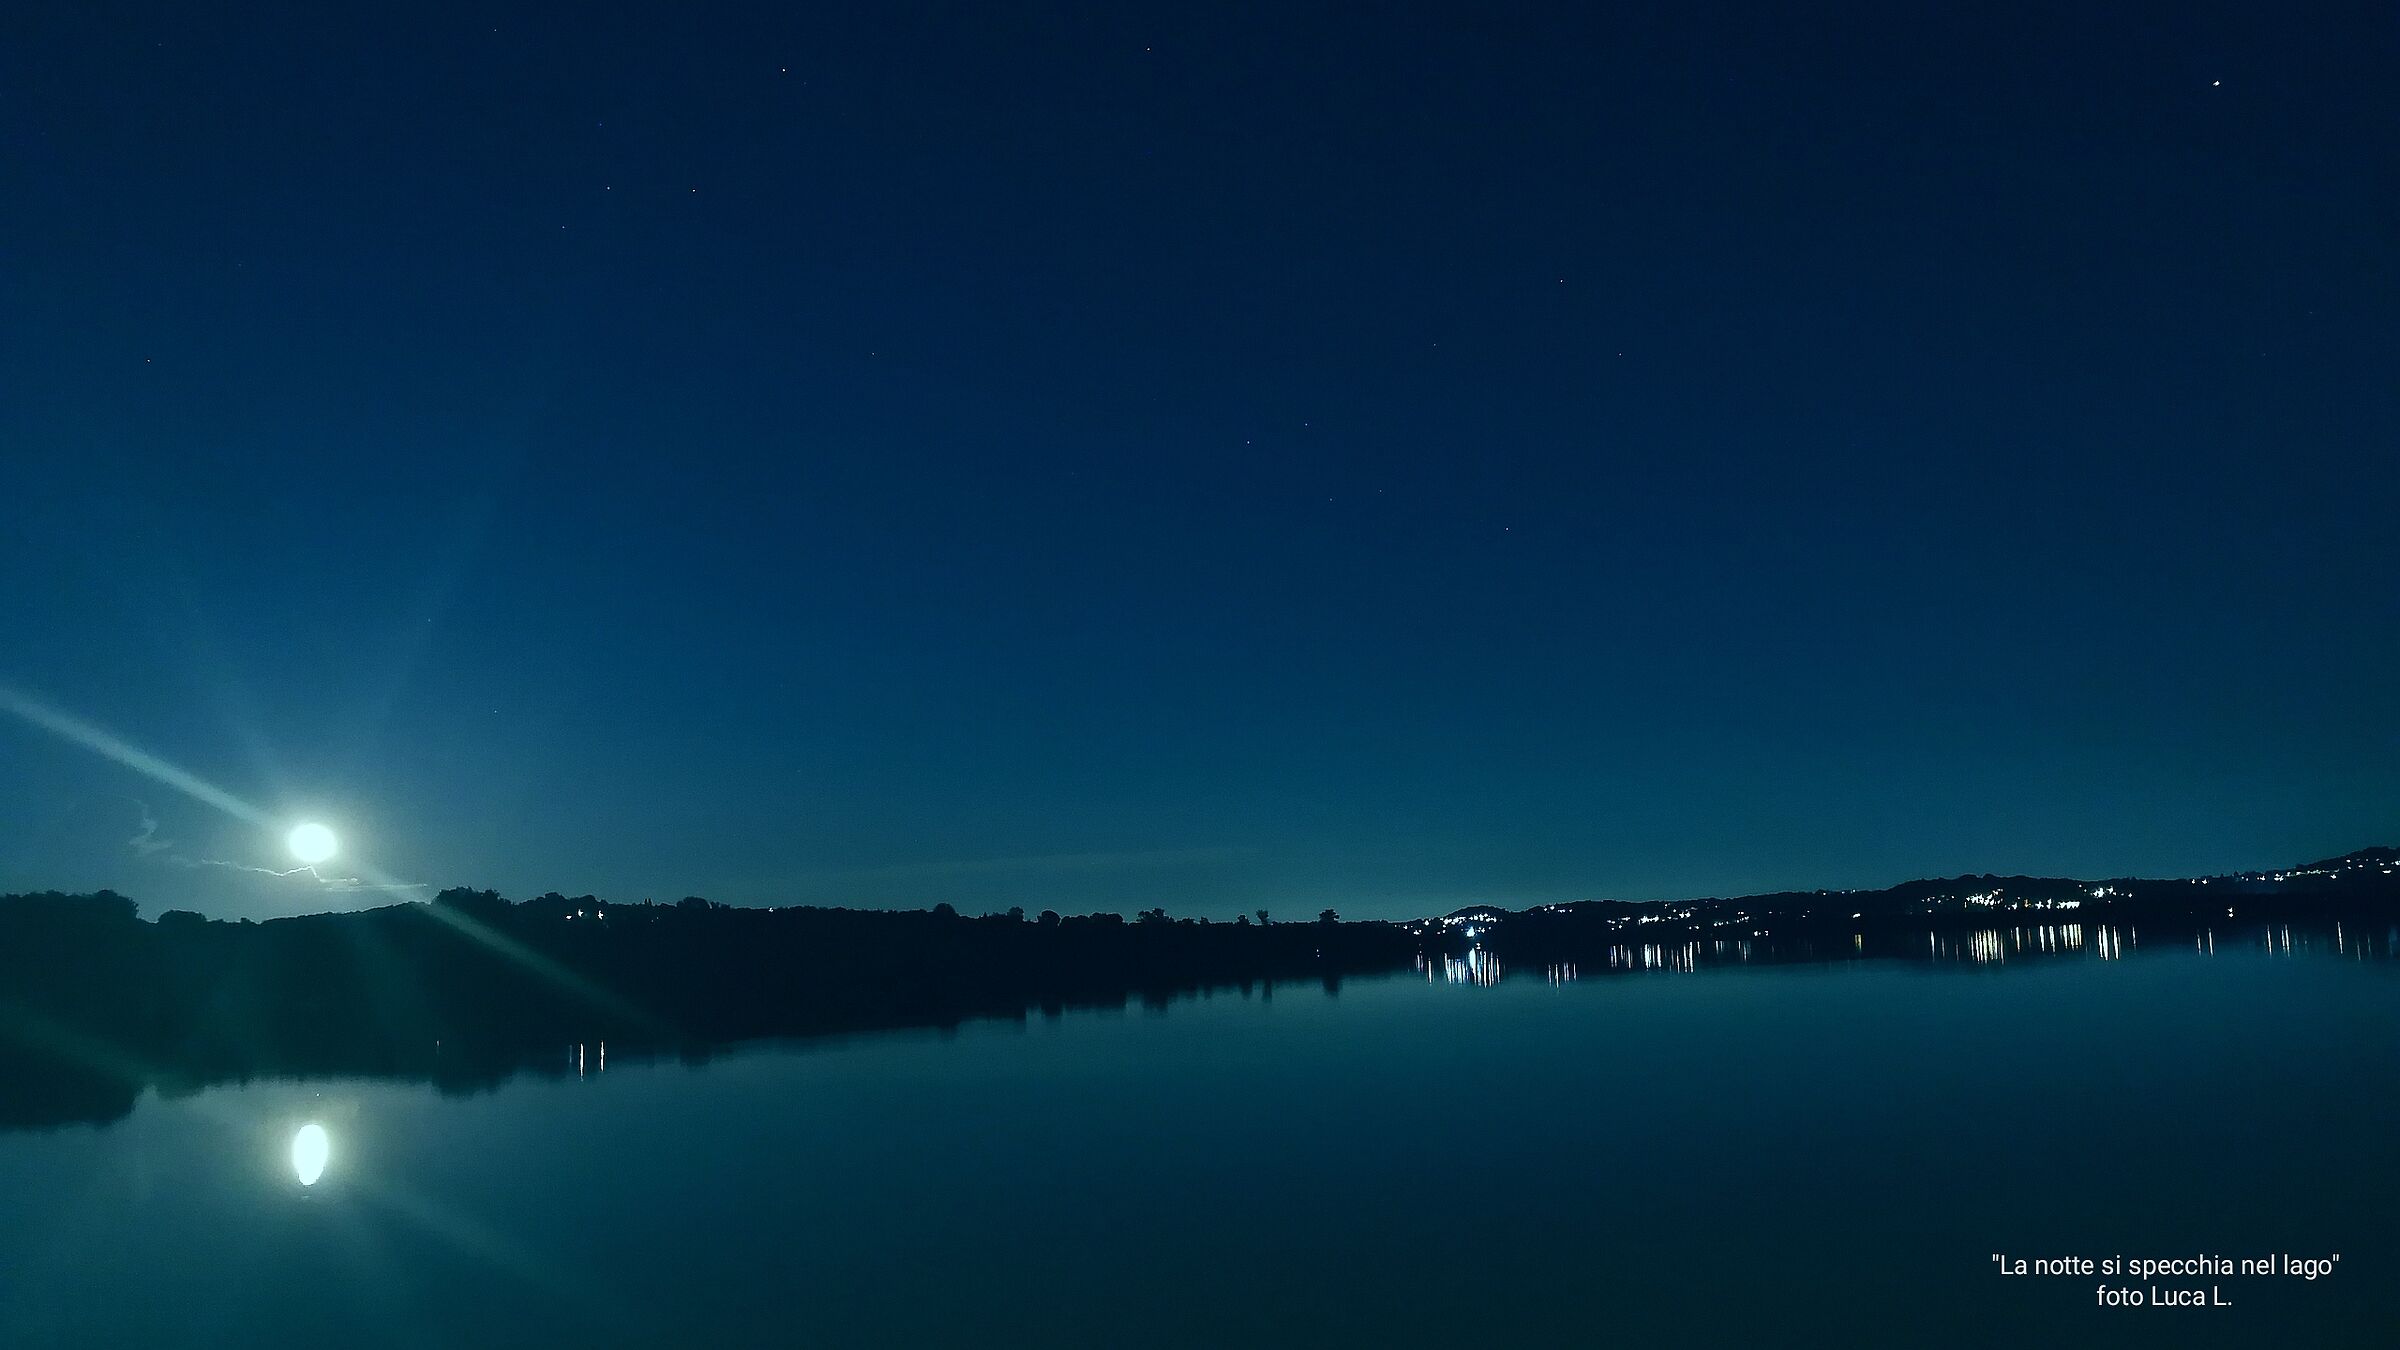 La notte si specchia nel lago...